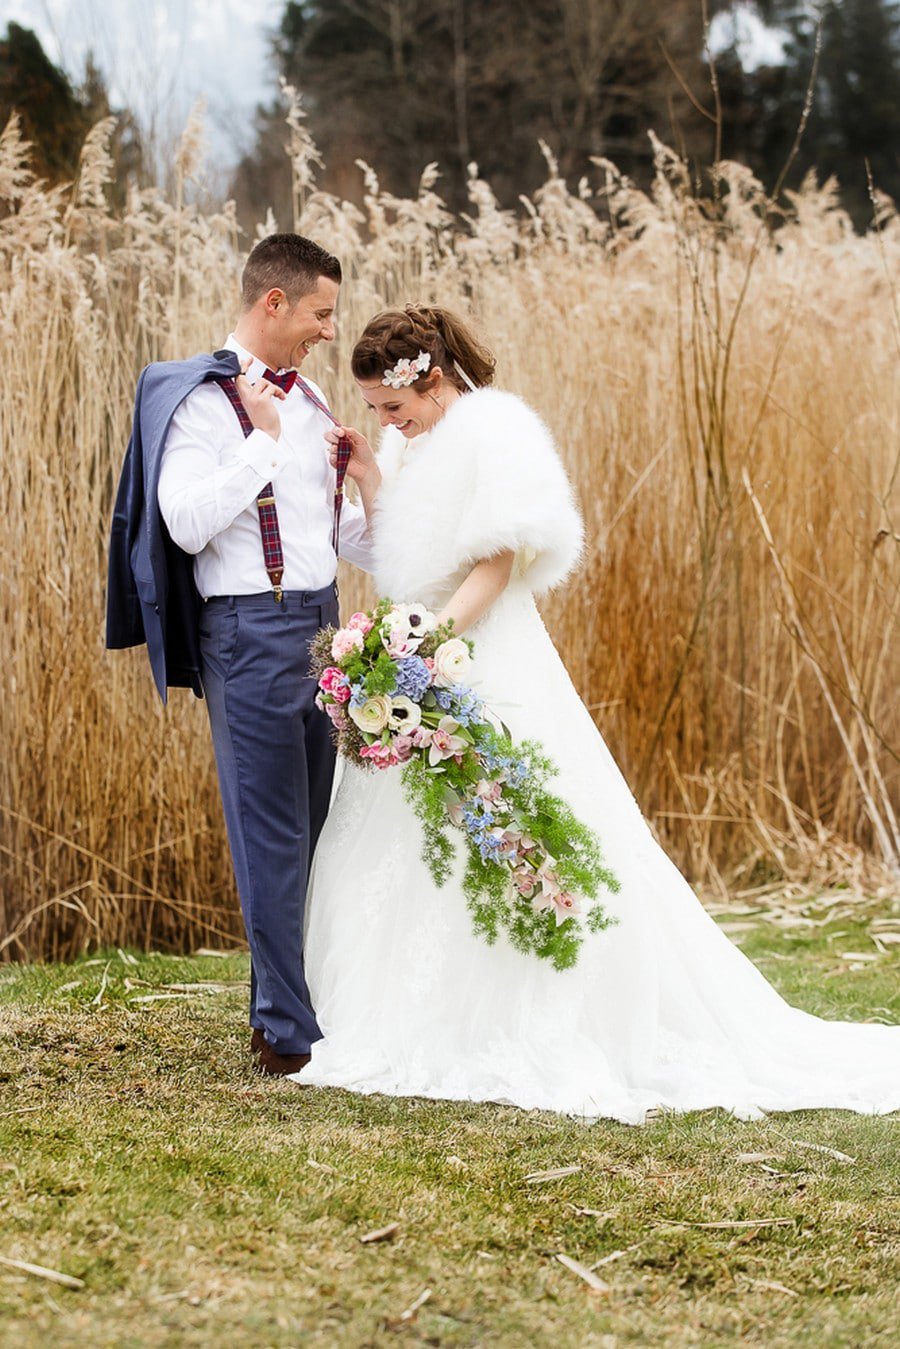 Braut und Bräutigam mit Retro-Fliege und Hosenträgern, kombiniert zum Boho-Vintage-Look